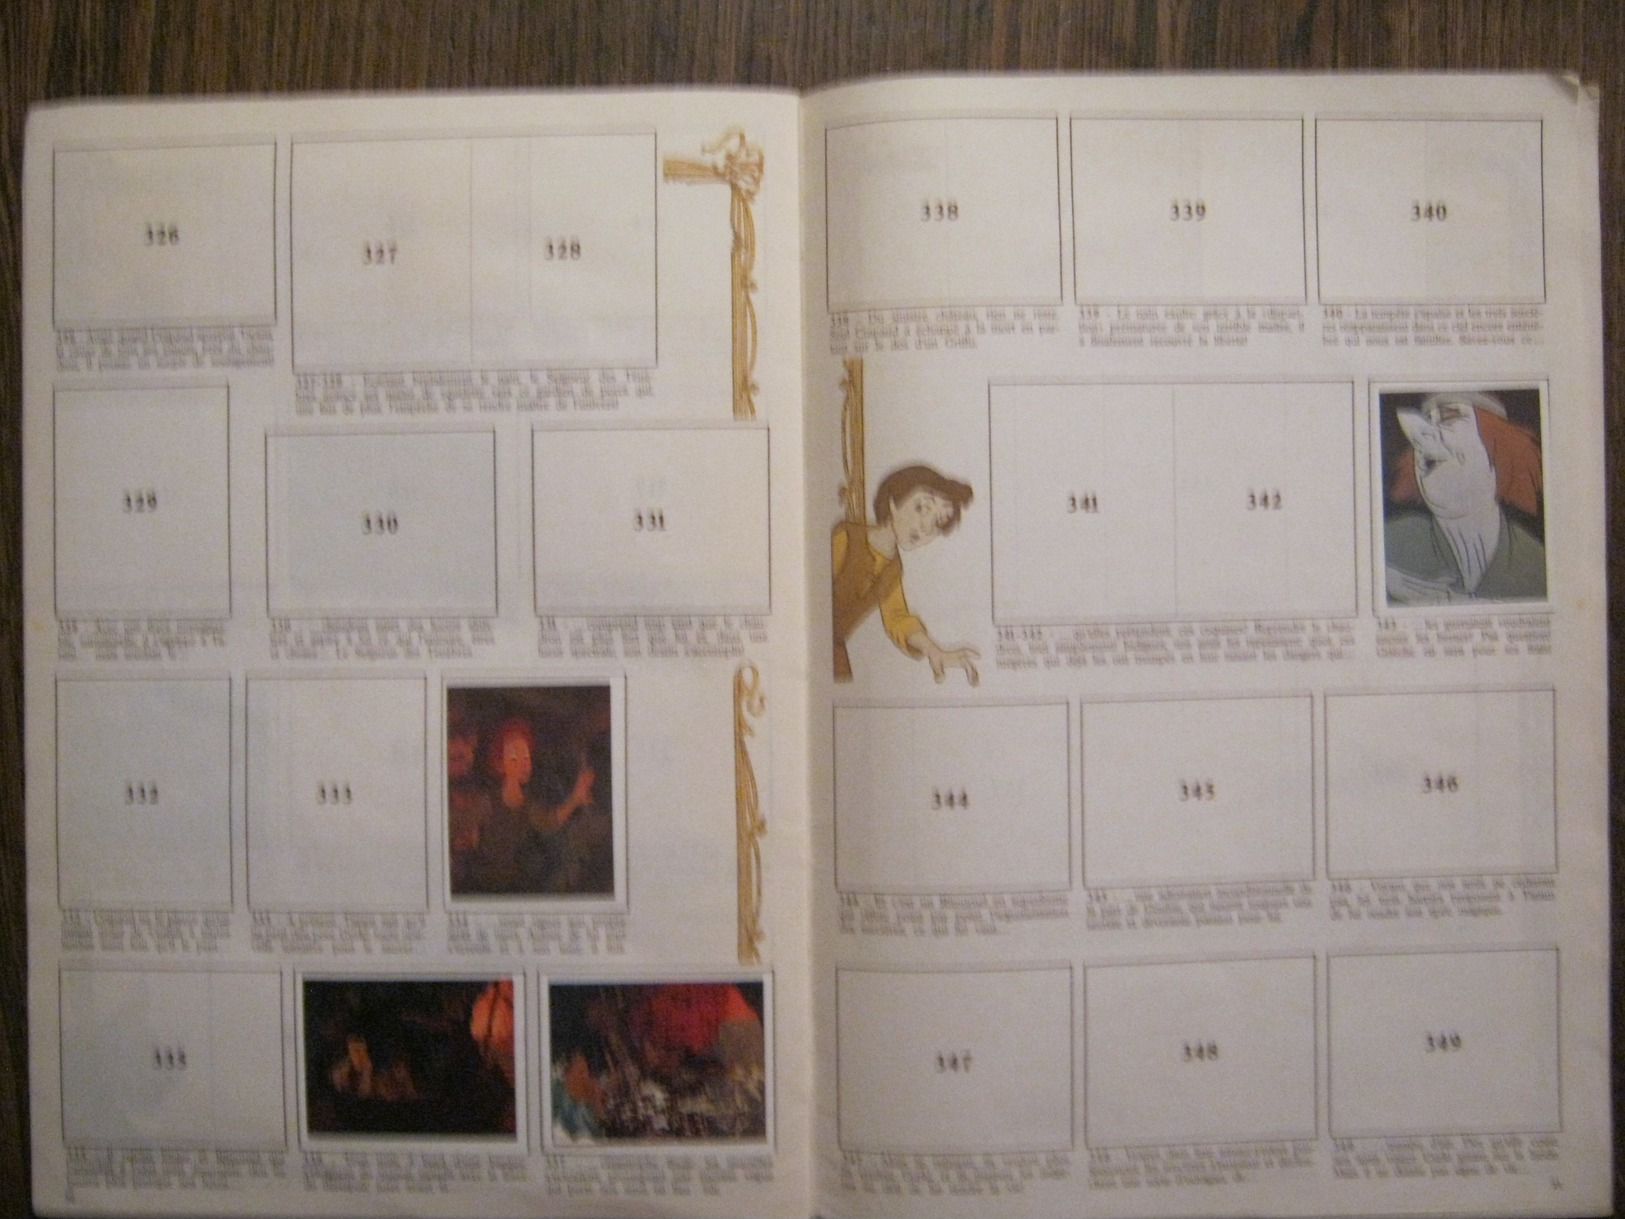 ALBUM PANINI-1985-"TARAM et LE CHAUDRON MAGIQUE"-43 images collées -